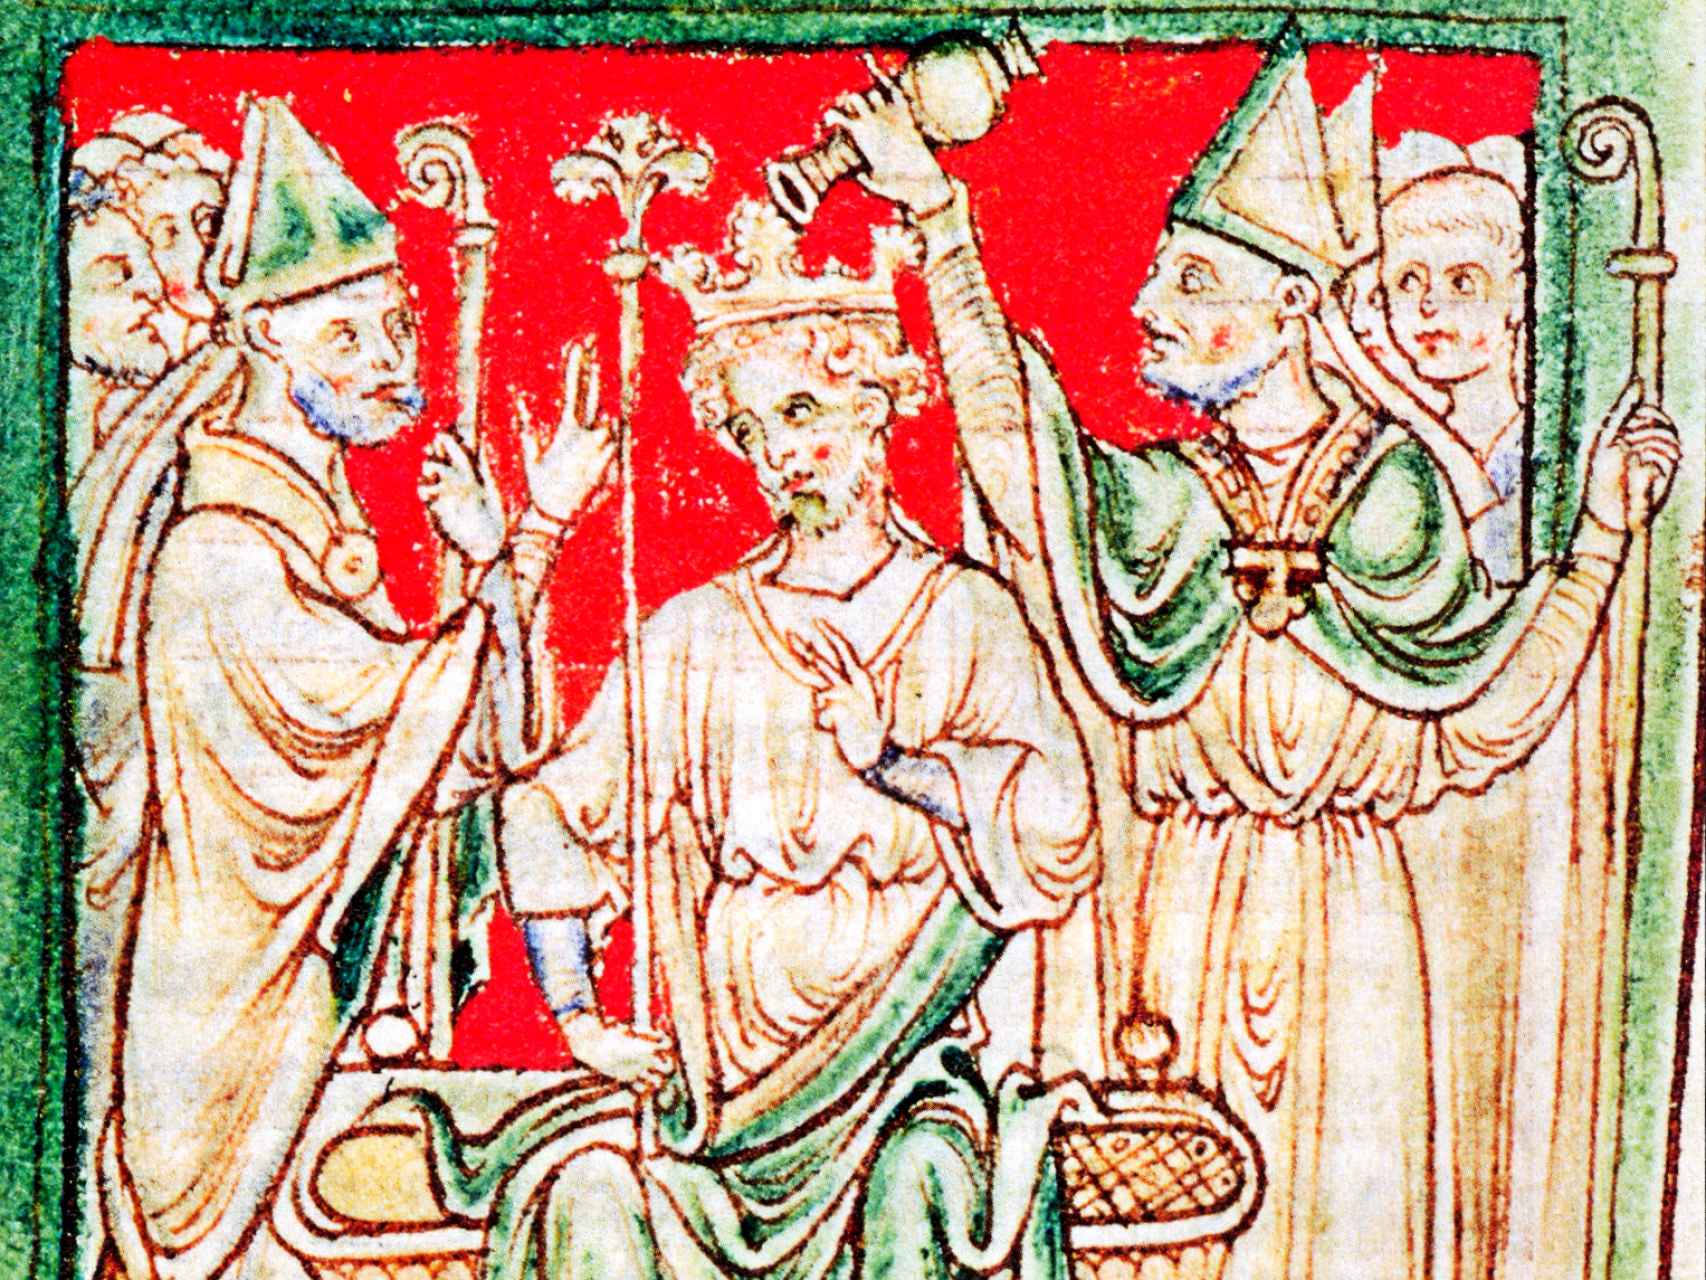 Ricardo I siendo ungido durante su coronación como rey en la abadía de Westminster, Londres. Ilustración de una crónica del siglo XIII.